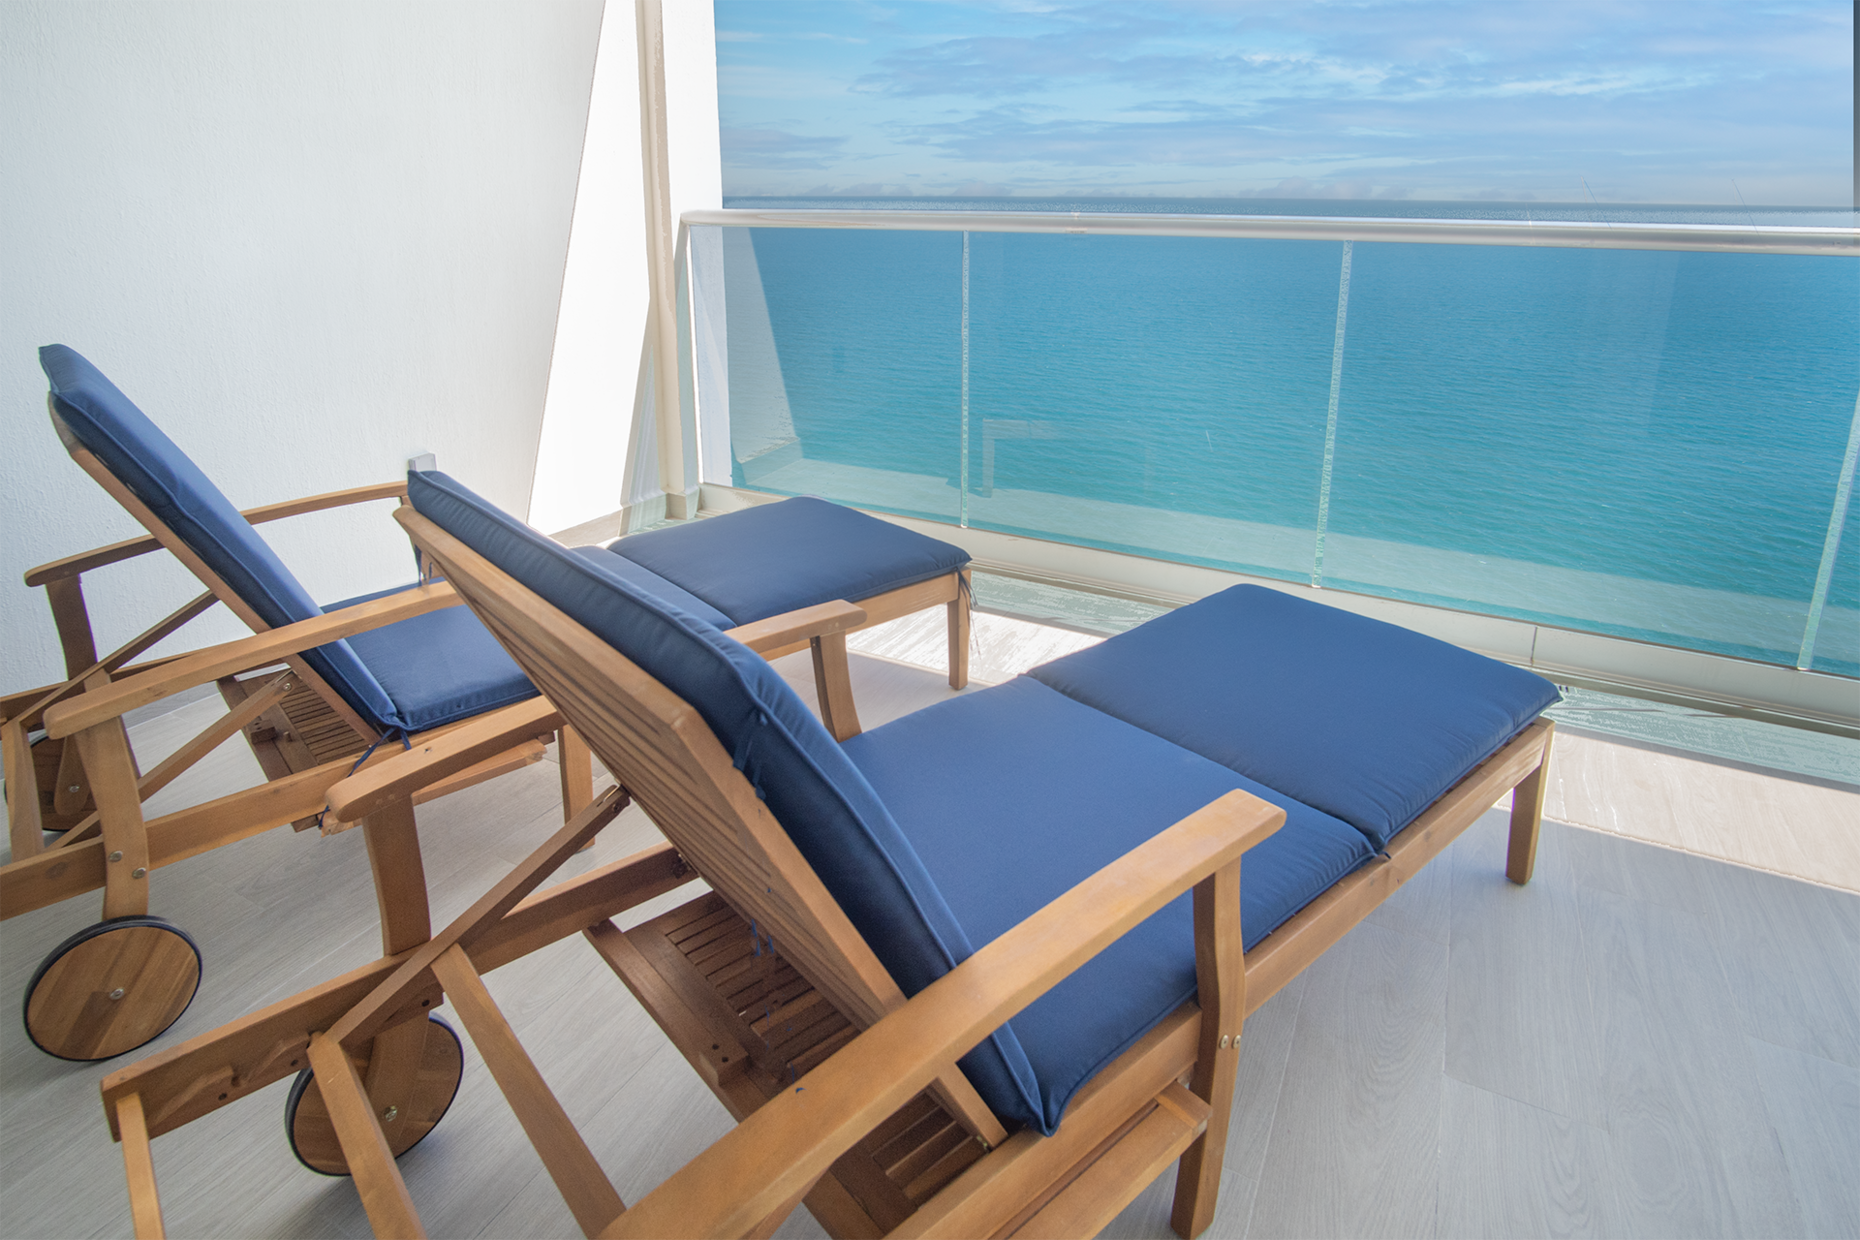 Balcony lounge chairs